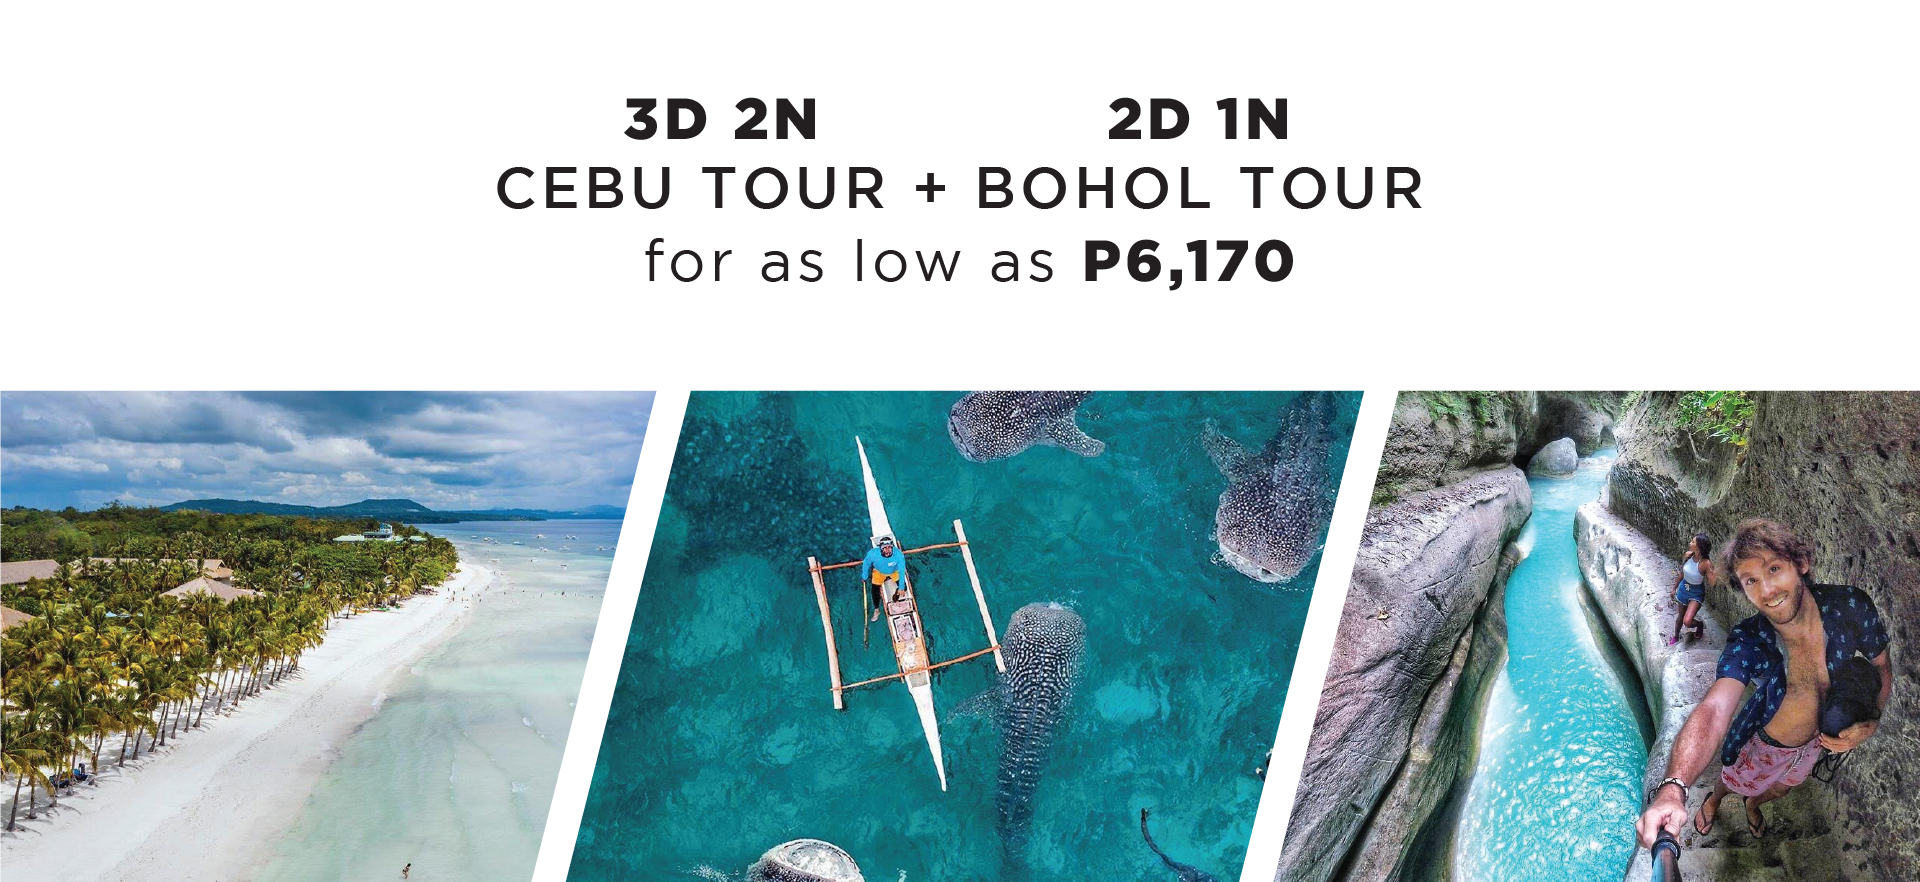 Cebu City and Bohol